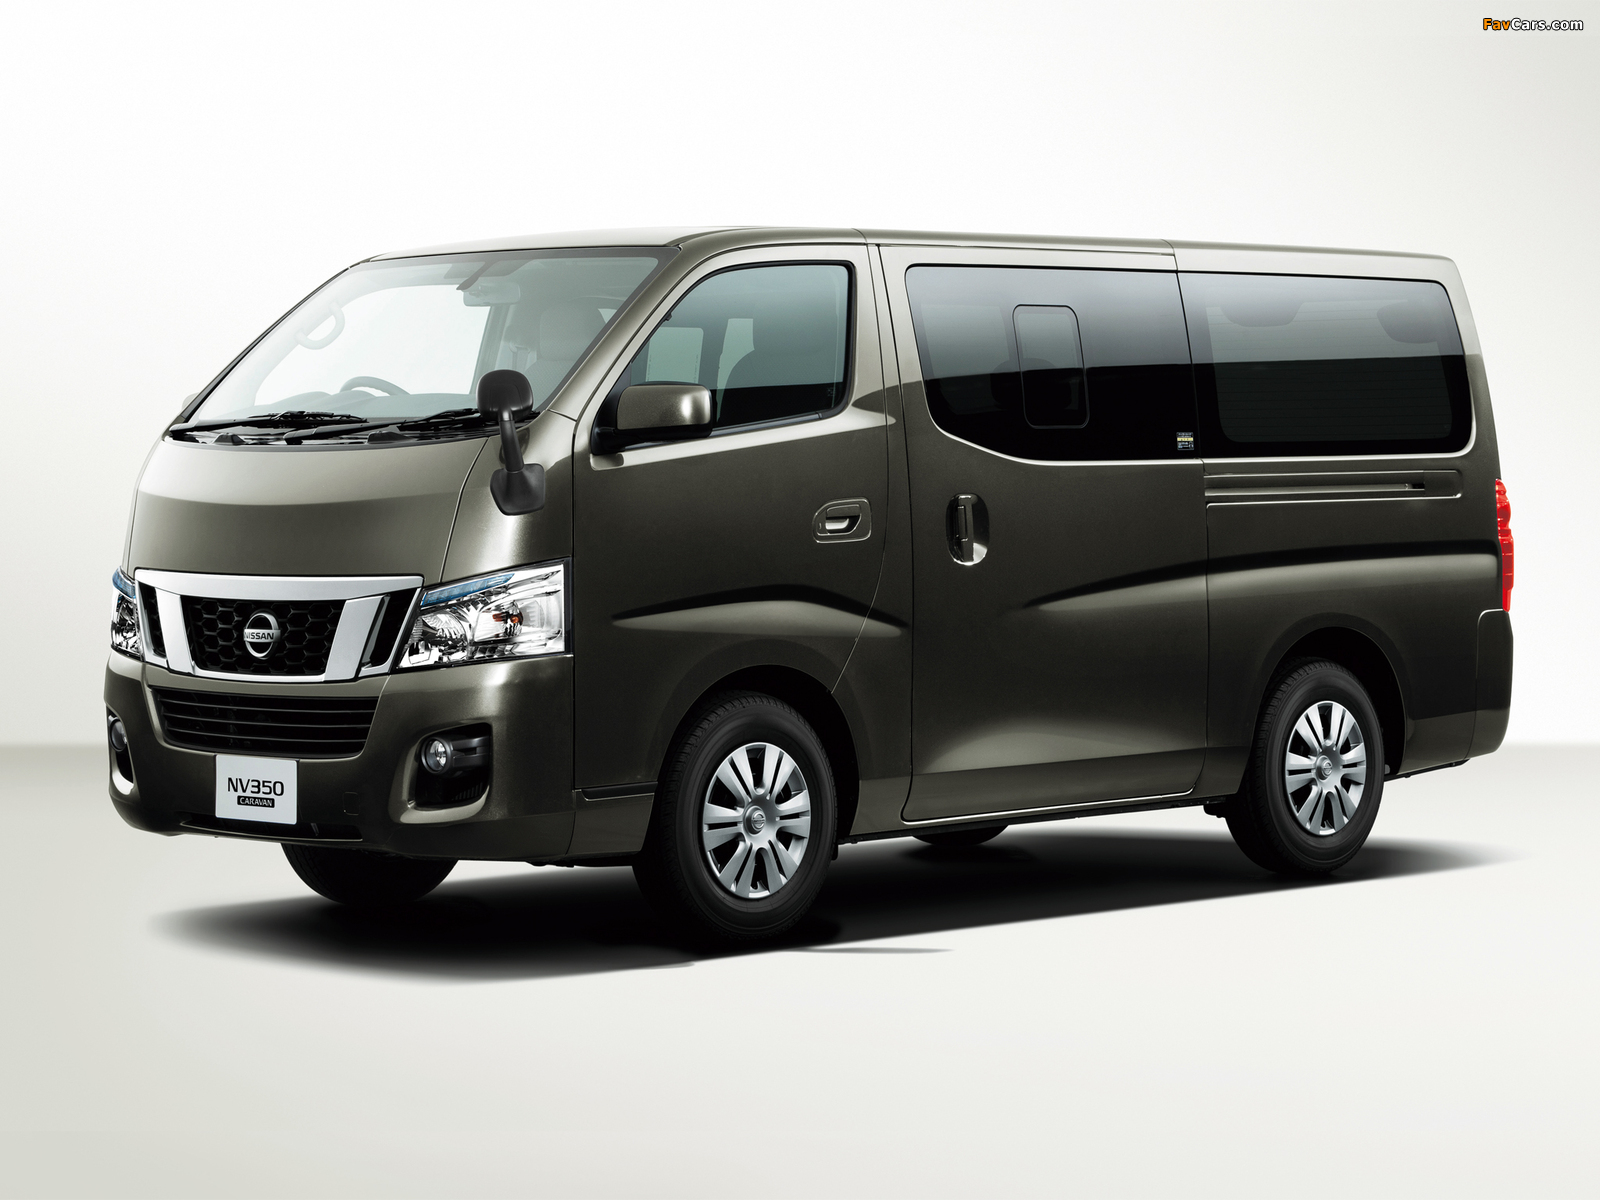 Nissan NV350 Caravan Premium GX (E26) 2012 images (1600 x 1200)